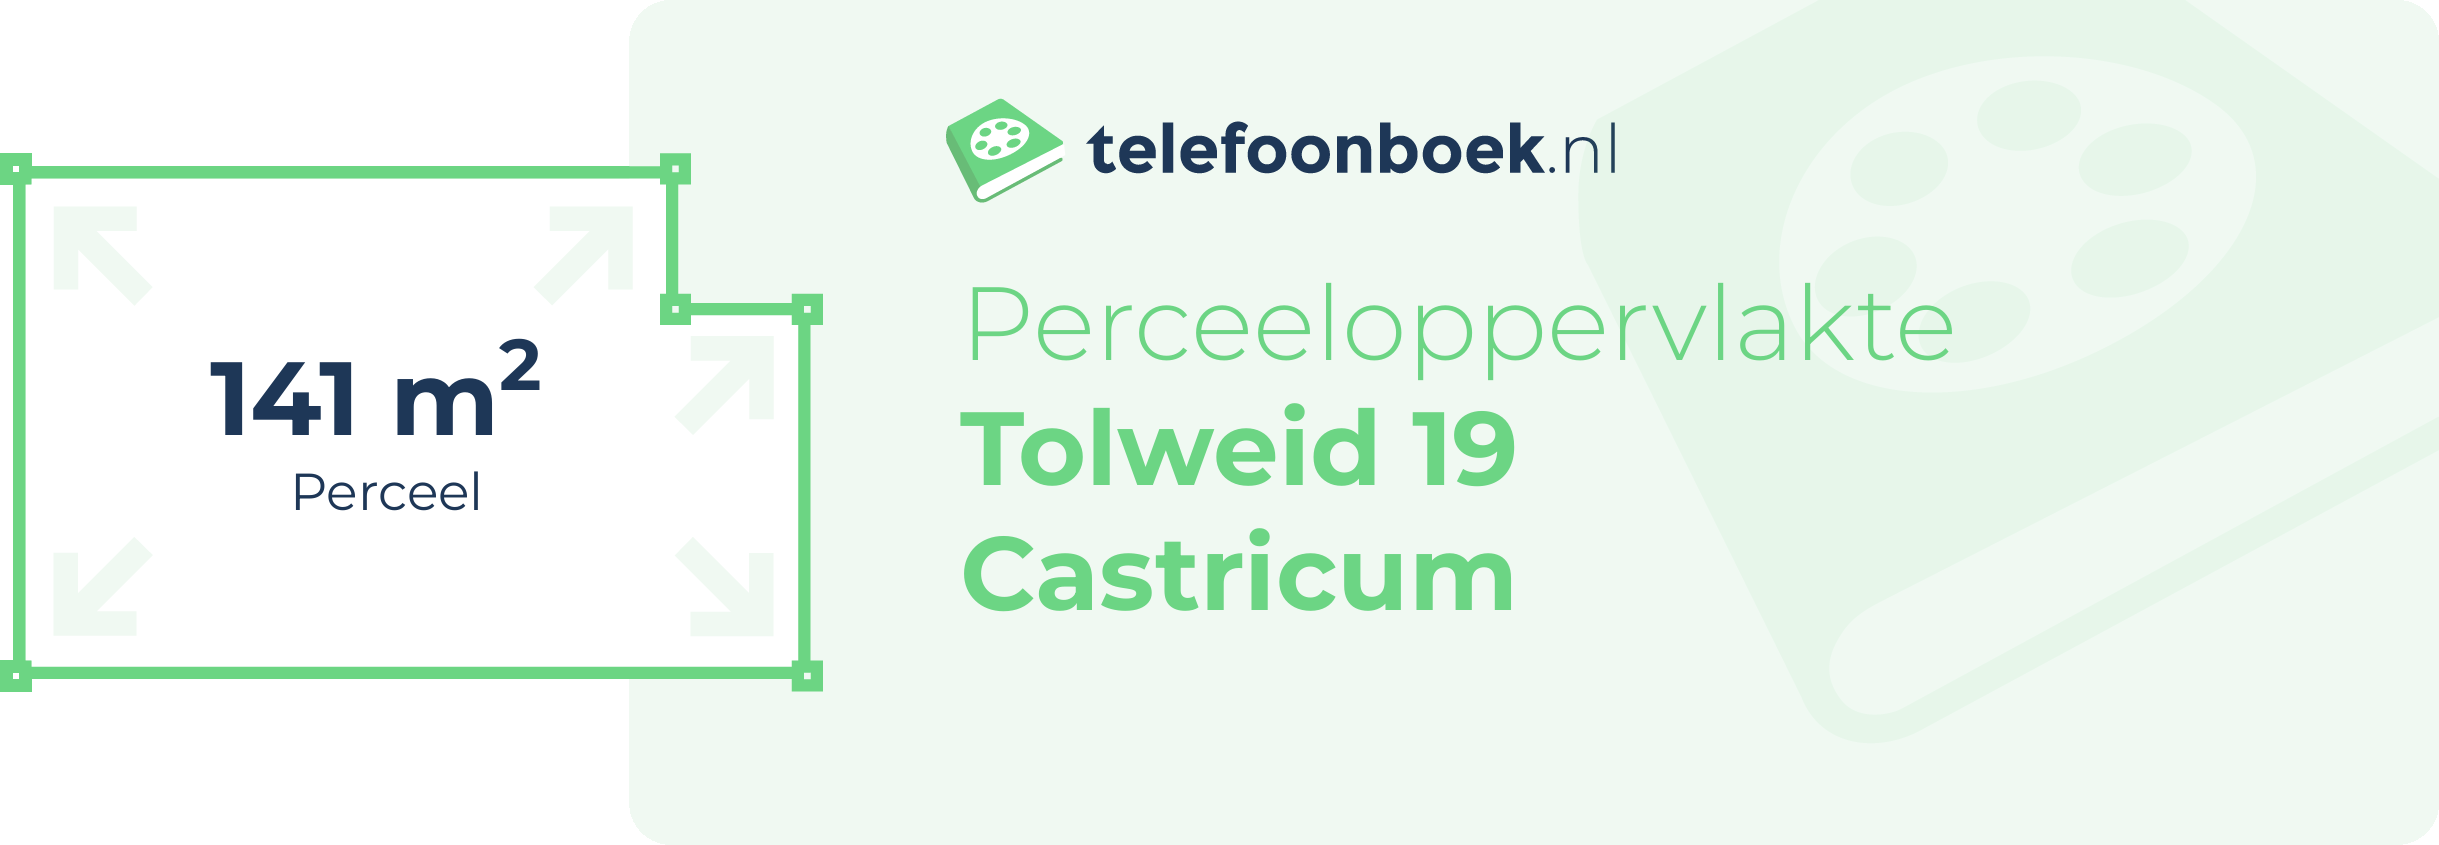 Perceeloppervlakte Tolweid 19 Castricum